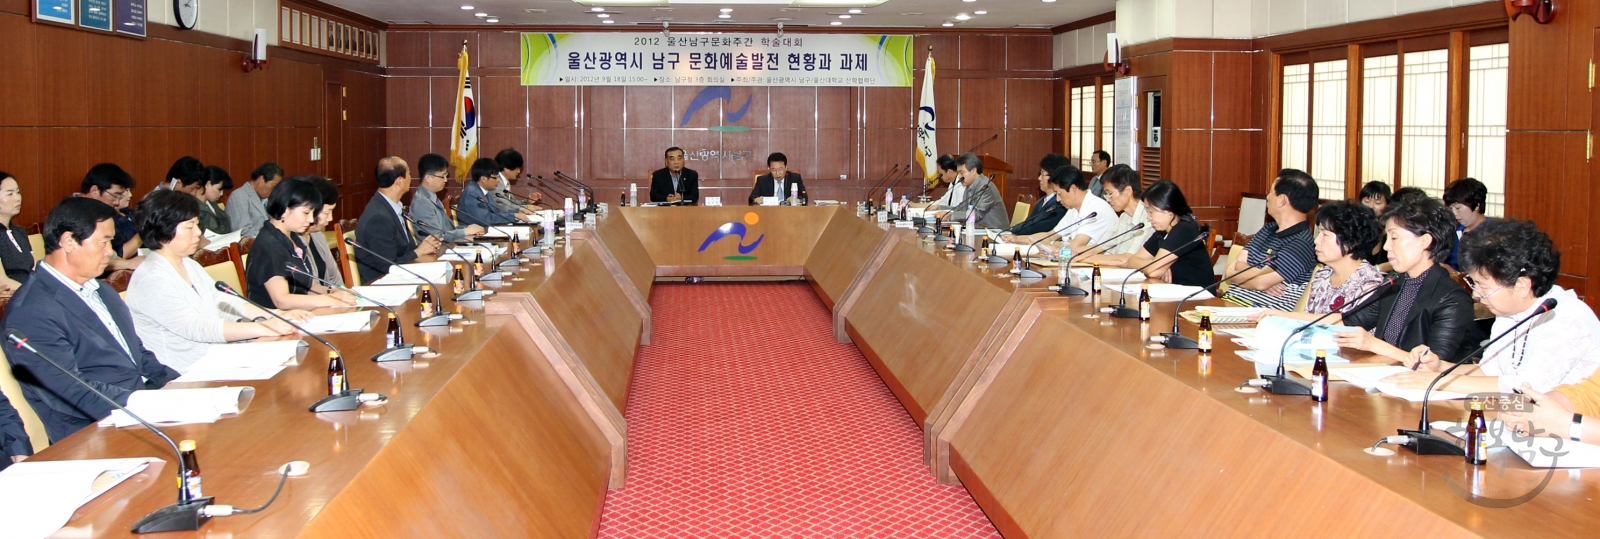 2012 울산남구문화주간 학술대회 의 사진